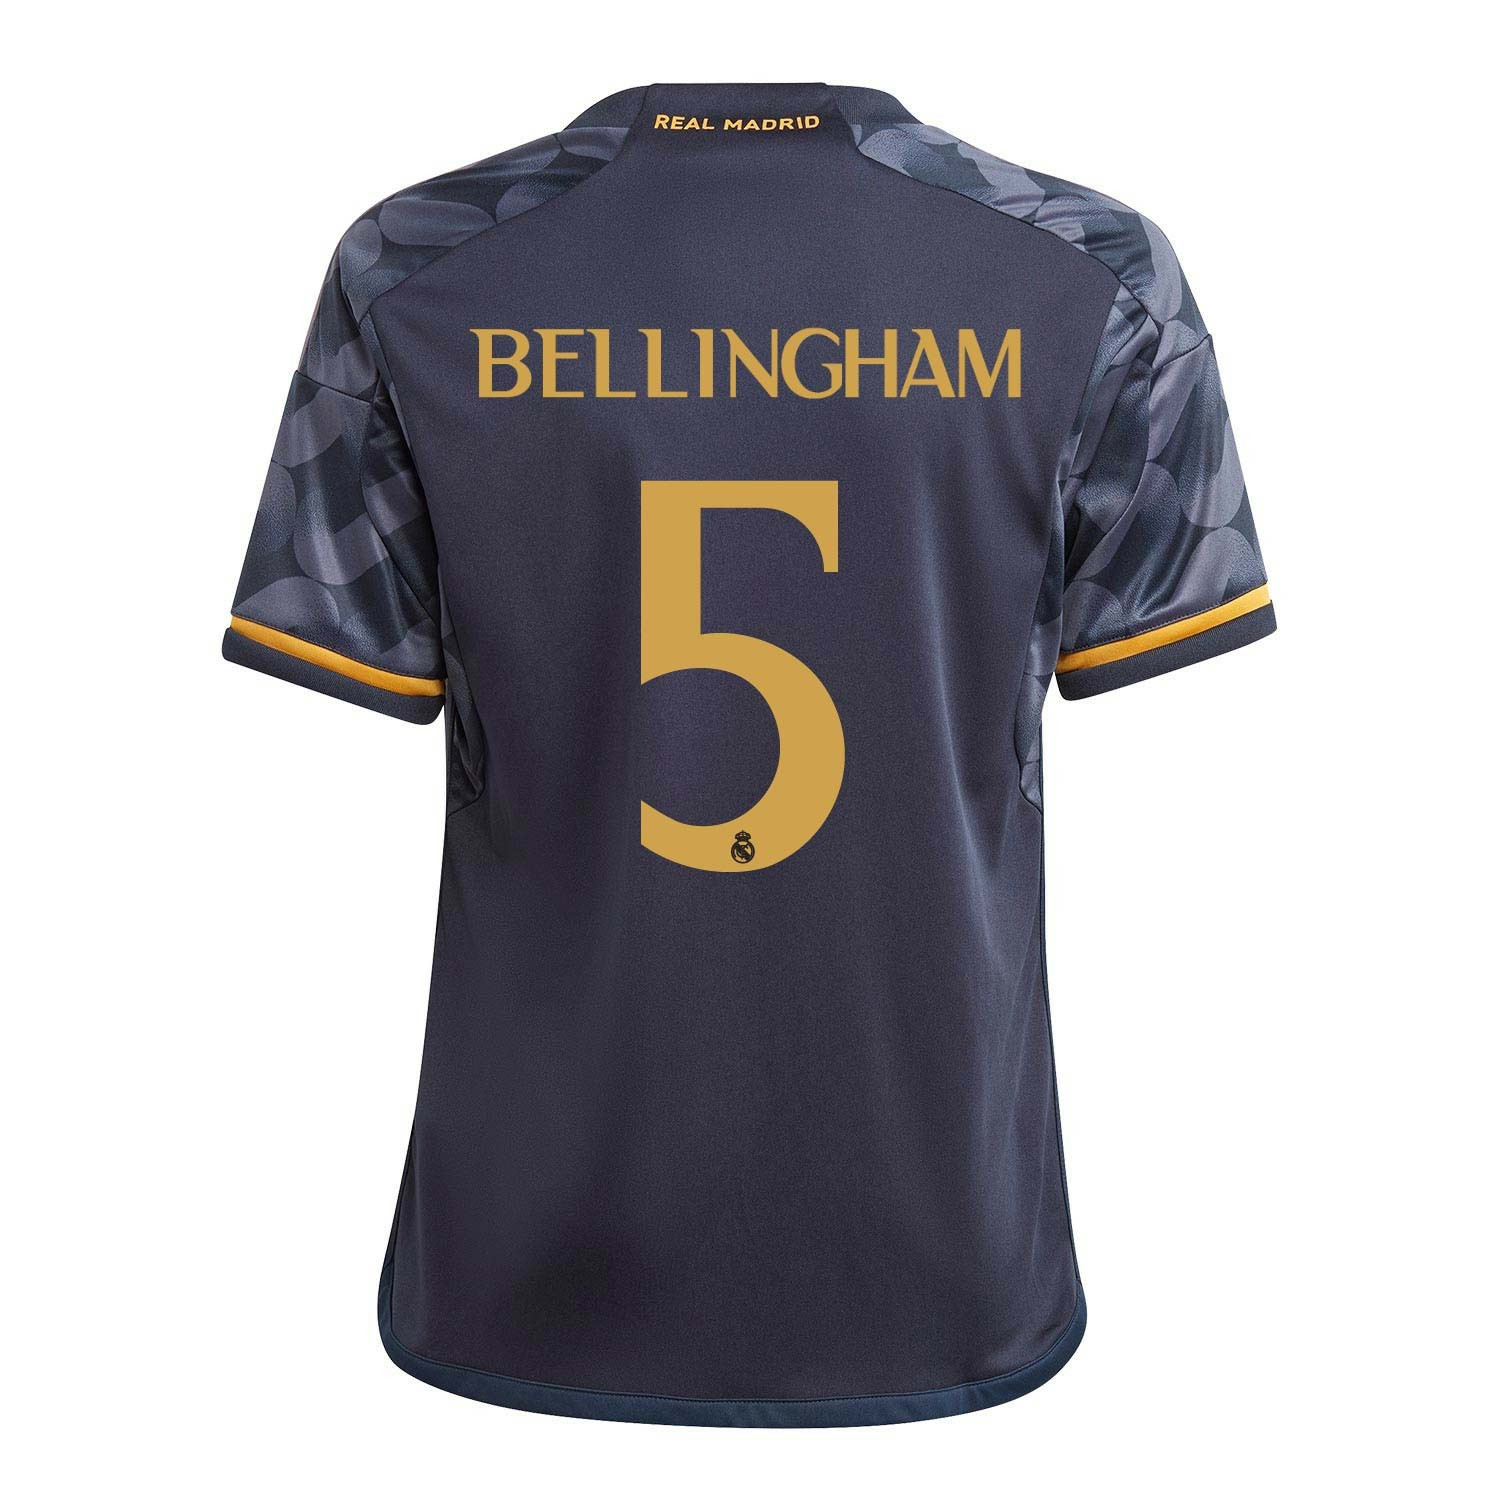 Qué dorsal usará Bellingham en el Real Madrid: número, por qué y cómo  comprar su camiseta